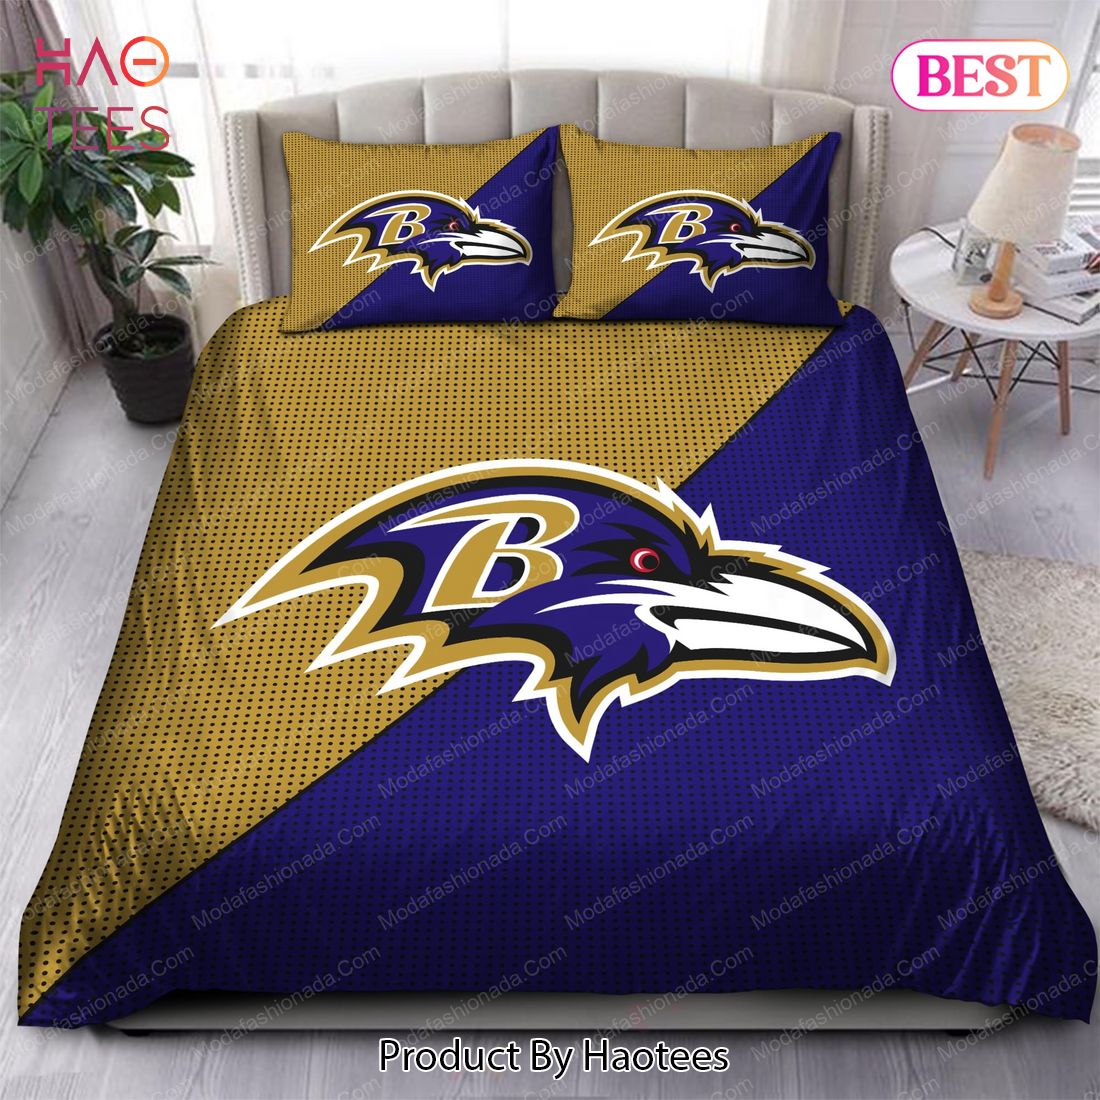 Buy Baltimore Ravens Logo Bedding Sets Bed Sets, Bedroom Sets, Comforter Sets, Duvet Cover, Bedspread